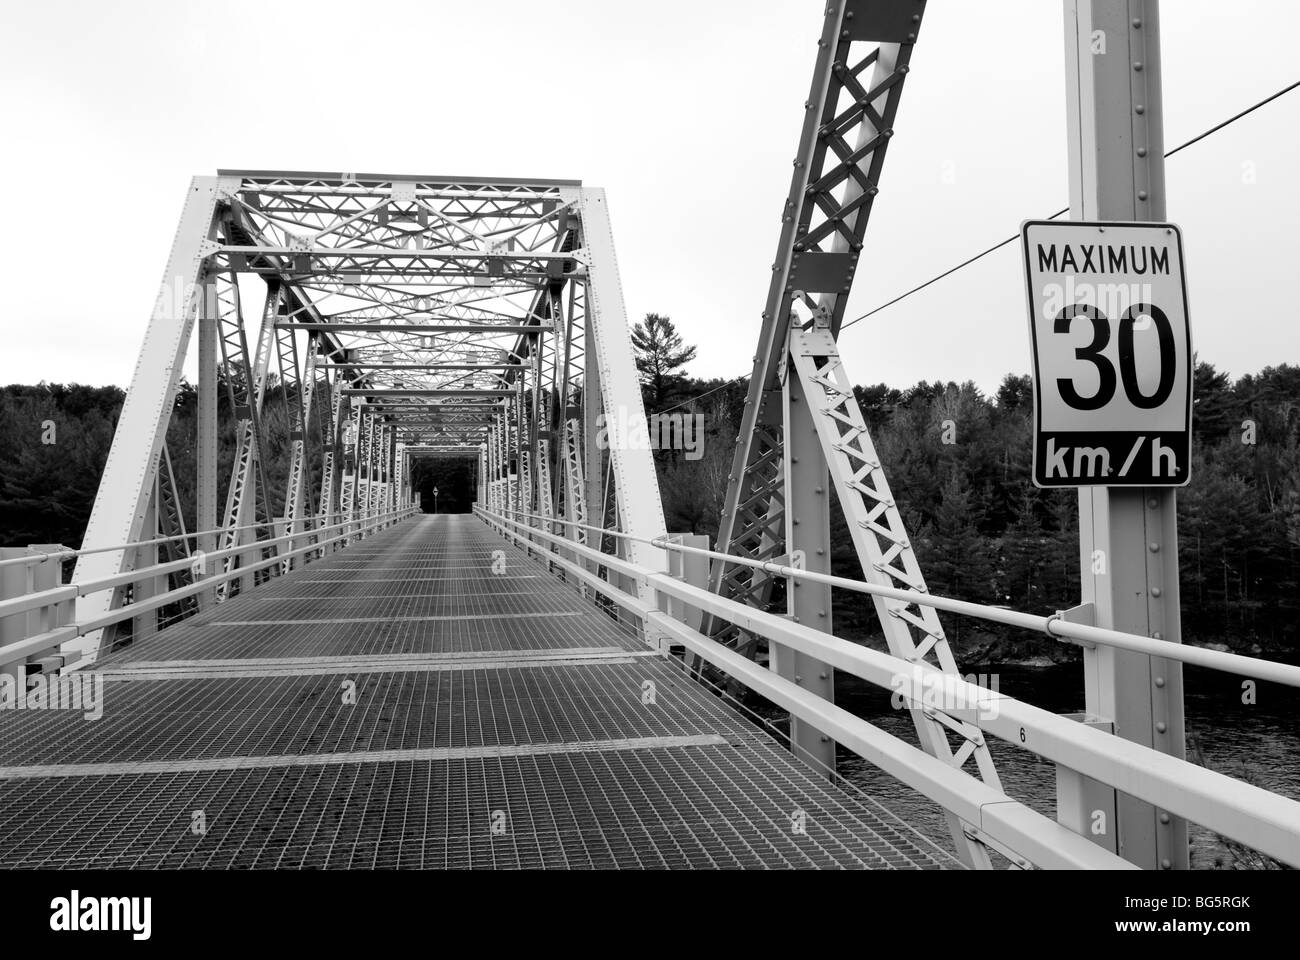 Signe de la vitesse affichée sur un pont à poutres en fer métallique. Banque D'Images